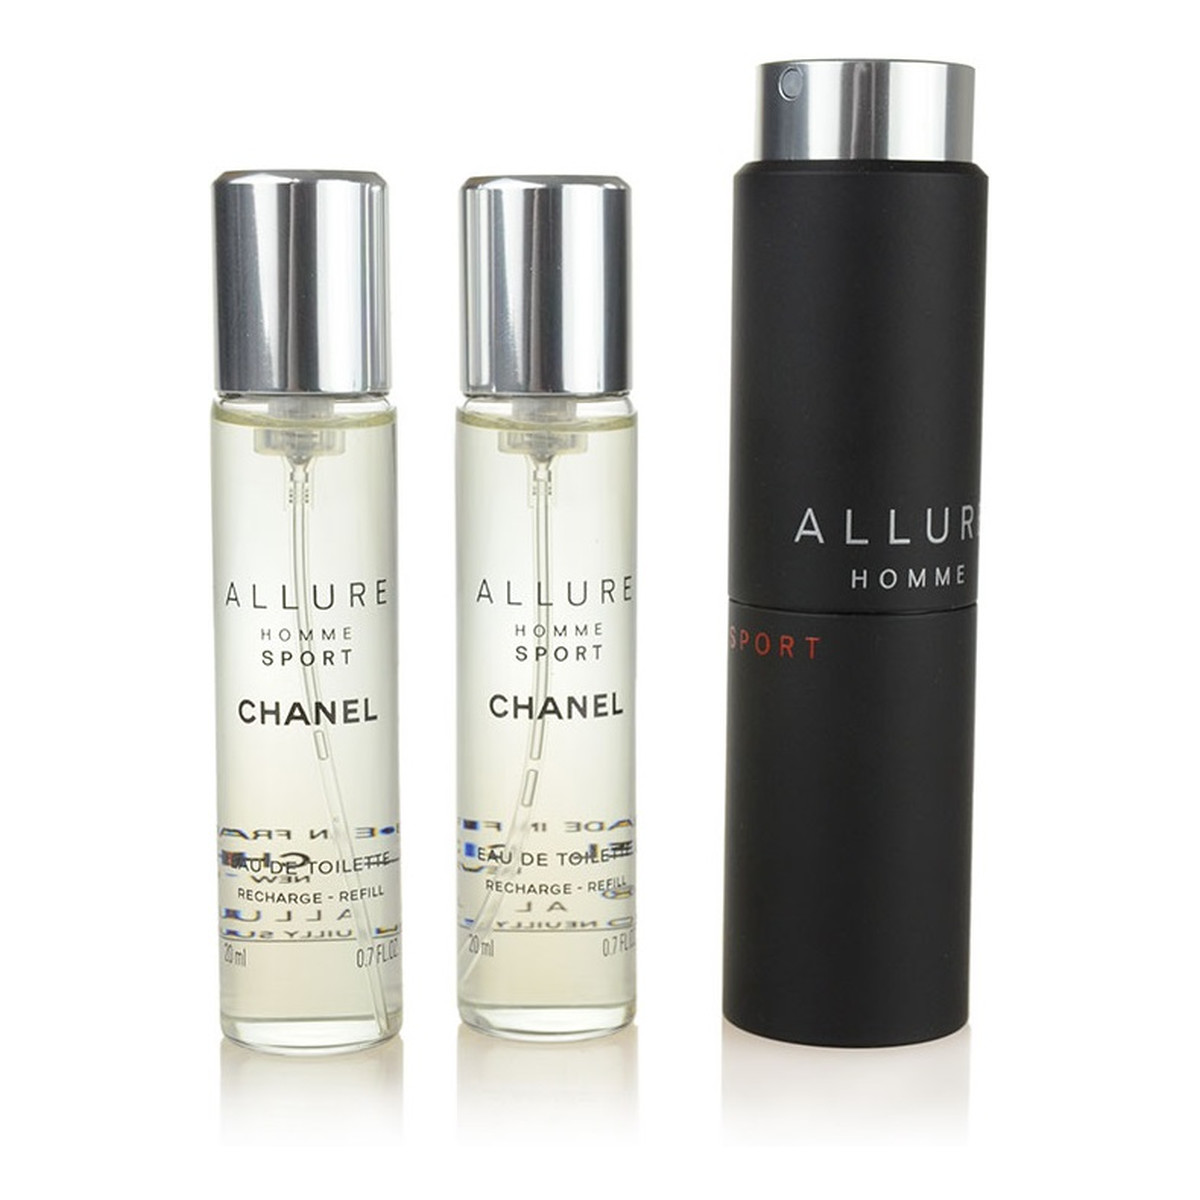 Chanel Allure Homme Sport woda toaletowa dla mężczyzn 1x spray + 2x wkład 60ml